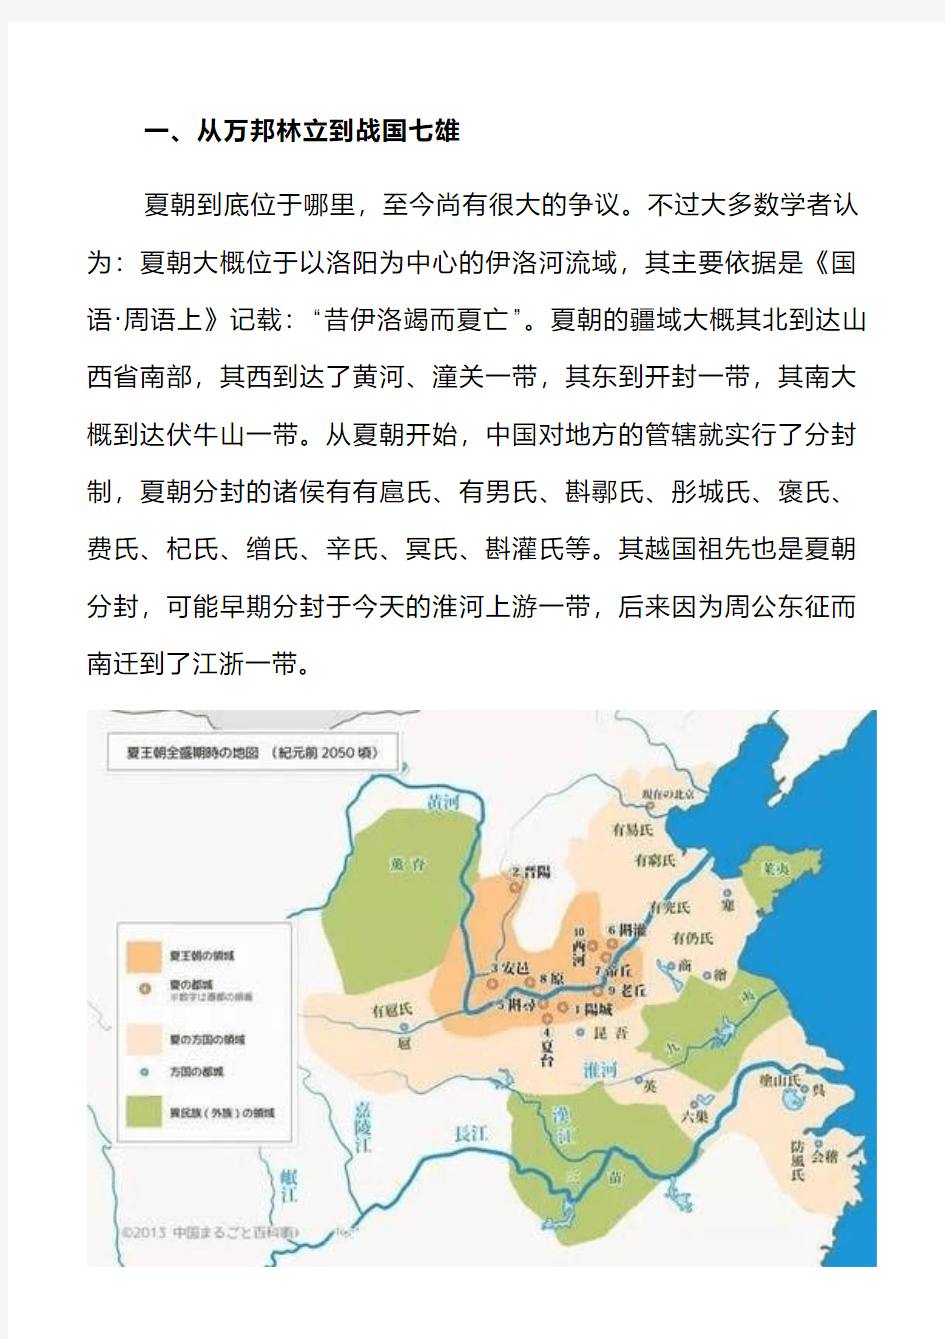 历史干货 _ 中国历史地图变迁史：从夏朝到清朝,4000多年艰苦卓绝